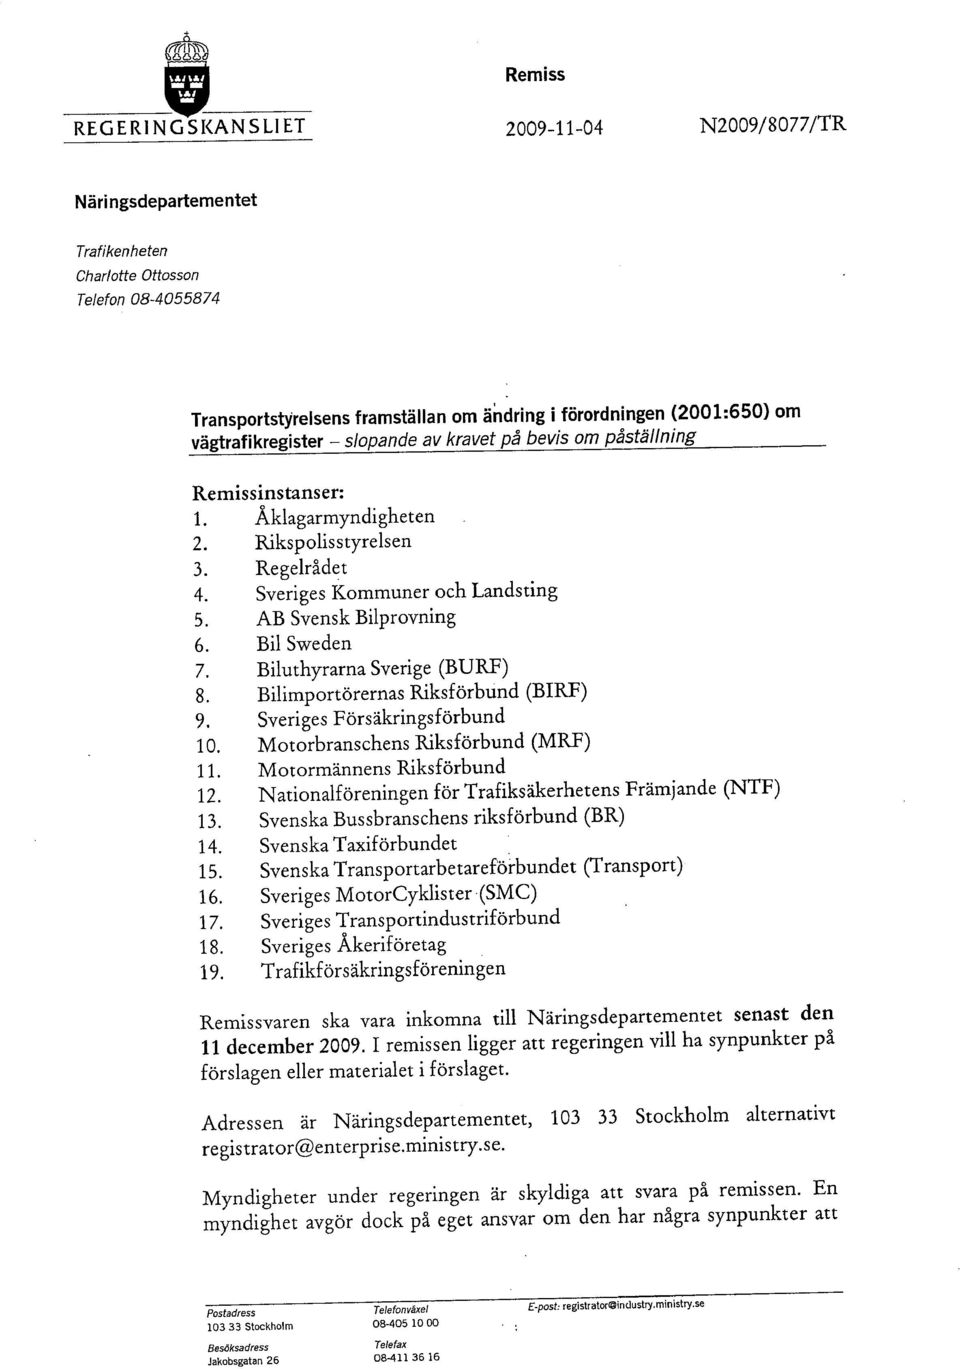 Biluthyrarna Sverige (BURF) 8. Bilimportörernas Riksförbund (BIRF) 9. Sveriges Försäkringsförbund 10. Motorbranschens Riksförbund (MRF) 11. Motormännens Riksförbund 12.